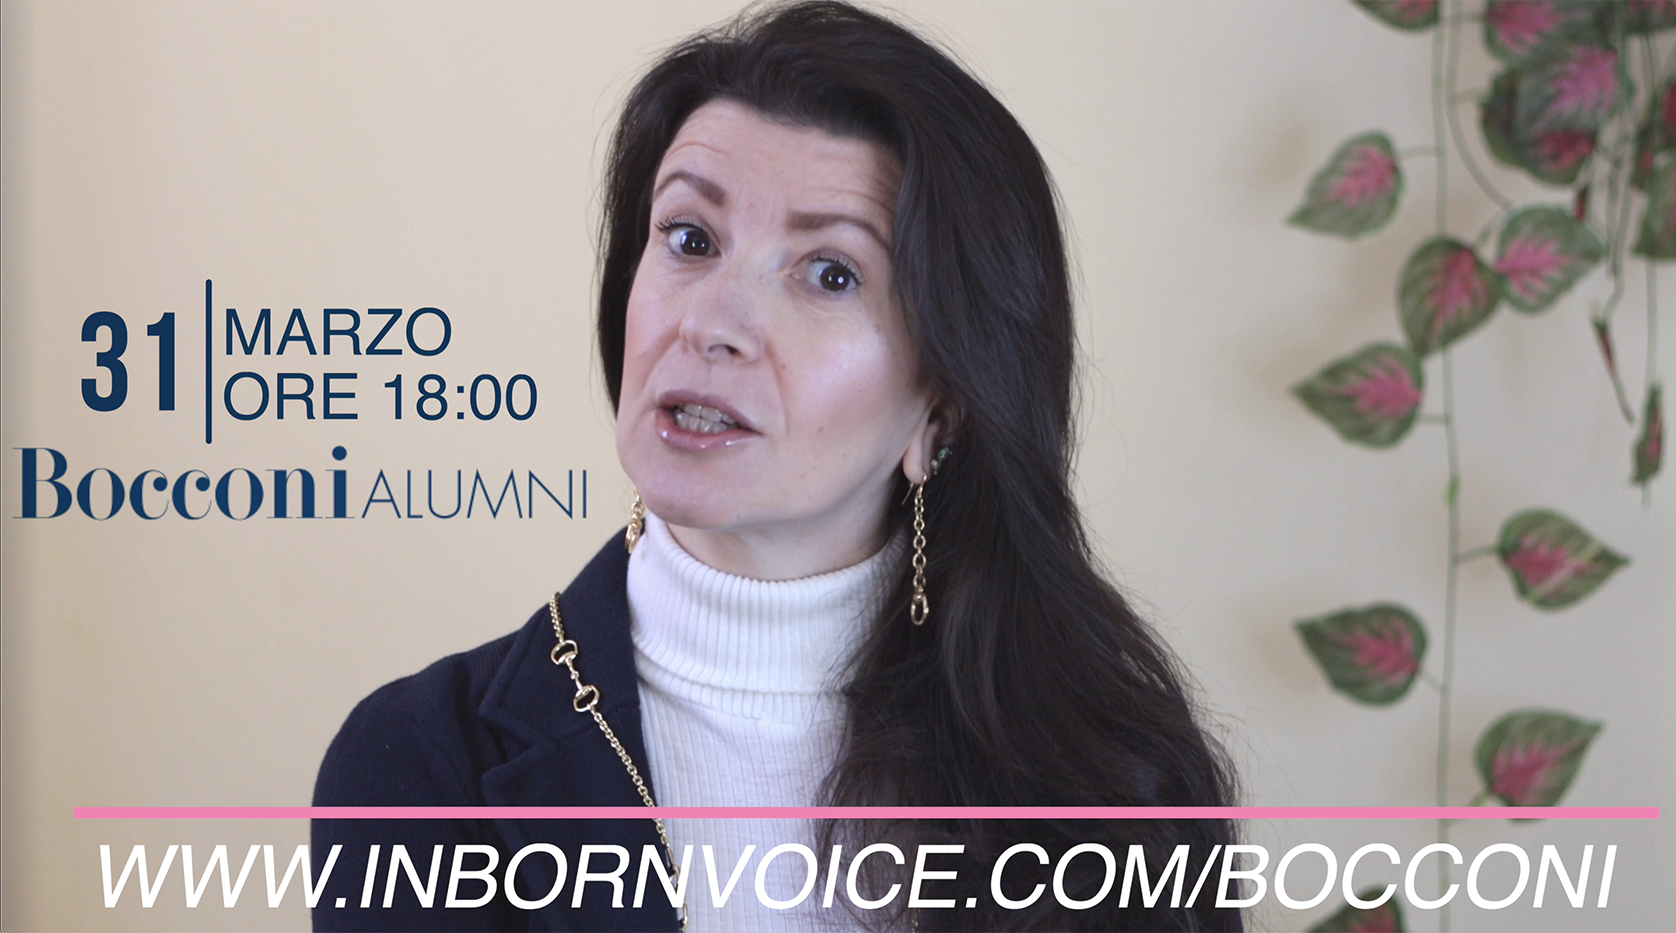 Webinar Gratuito con Mylena Vocal Coach per Alunni Bocconi